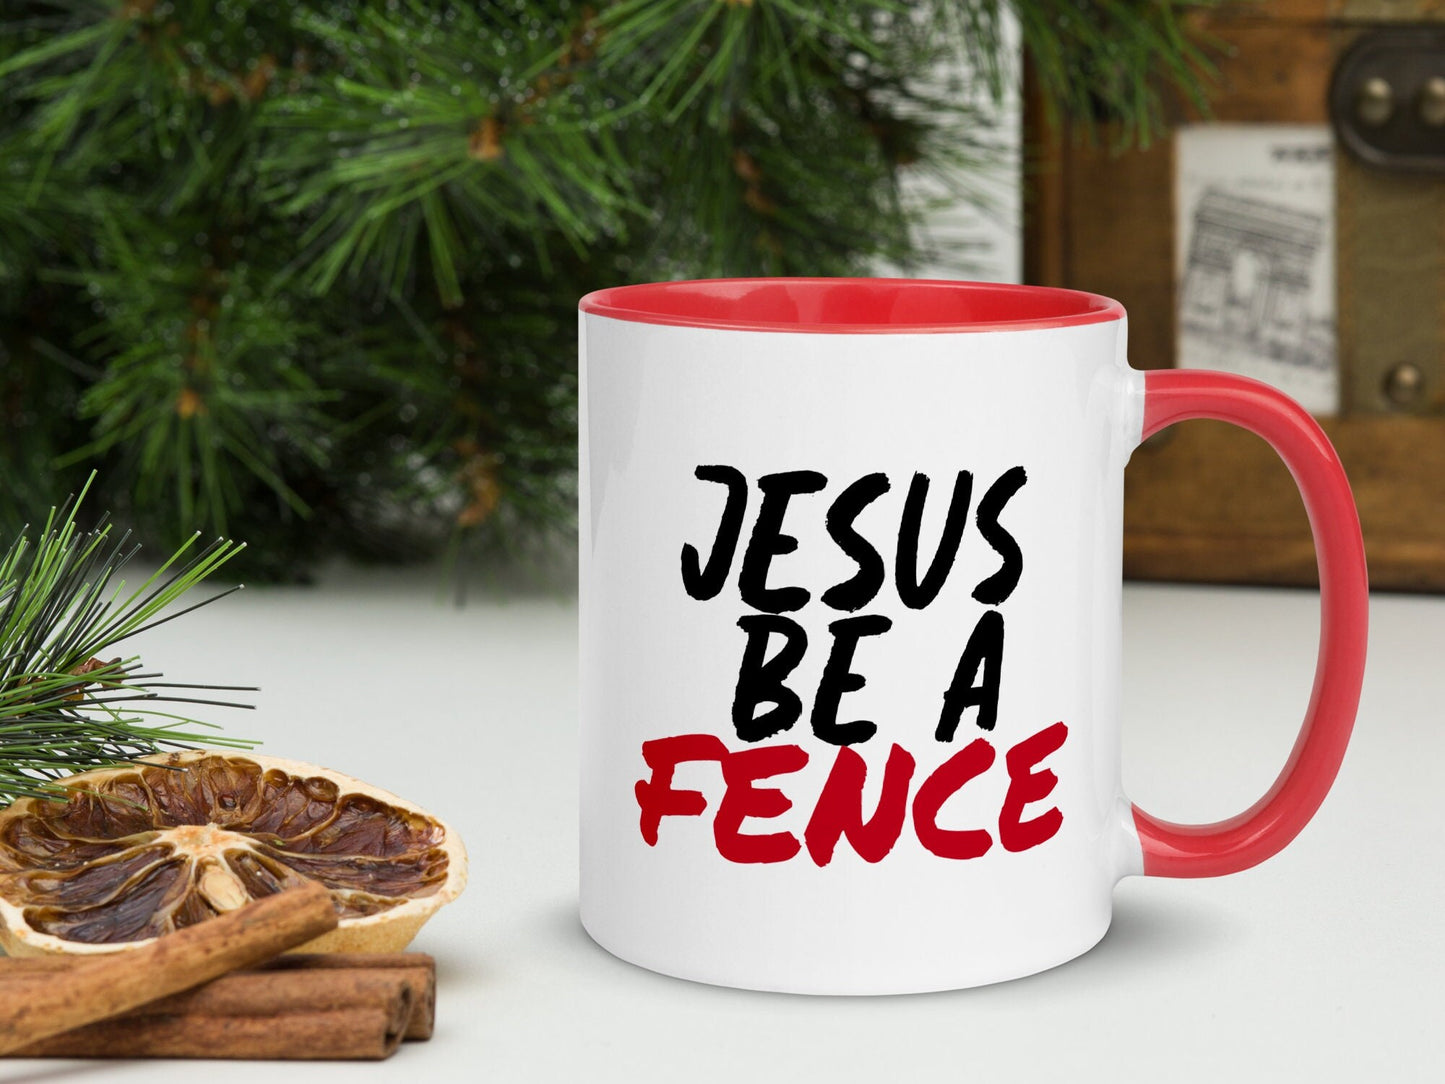 Jesus Mug, Jesus Be A Fence Mug, Christian Mug, God Mug, Spiritual Mug, Bible Mug, Scripture Mug, Religious Mug, Catholic Mug, Coffee Mug 26